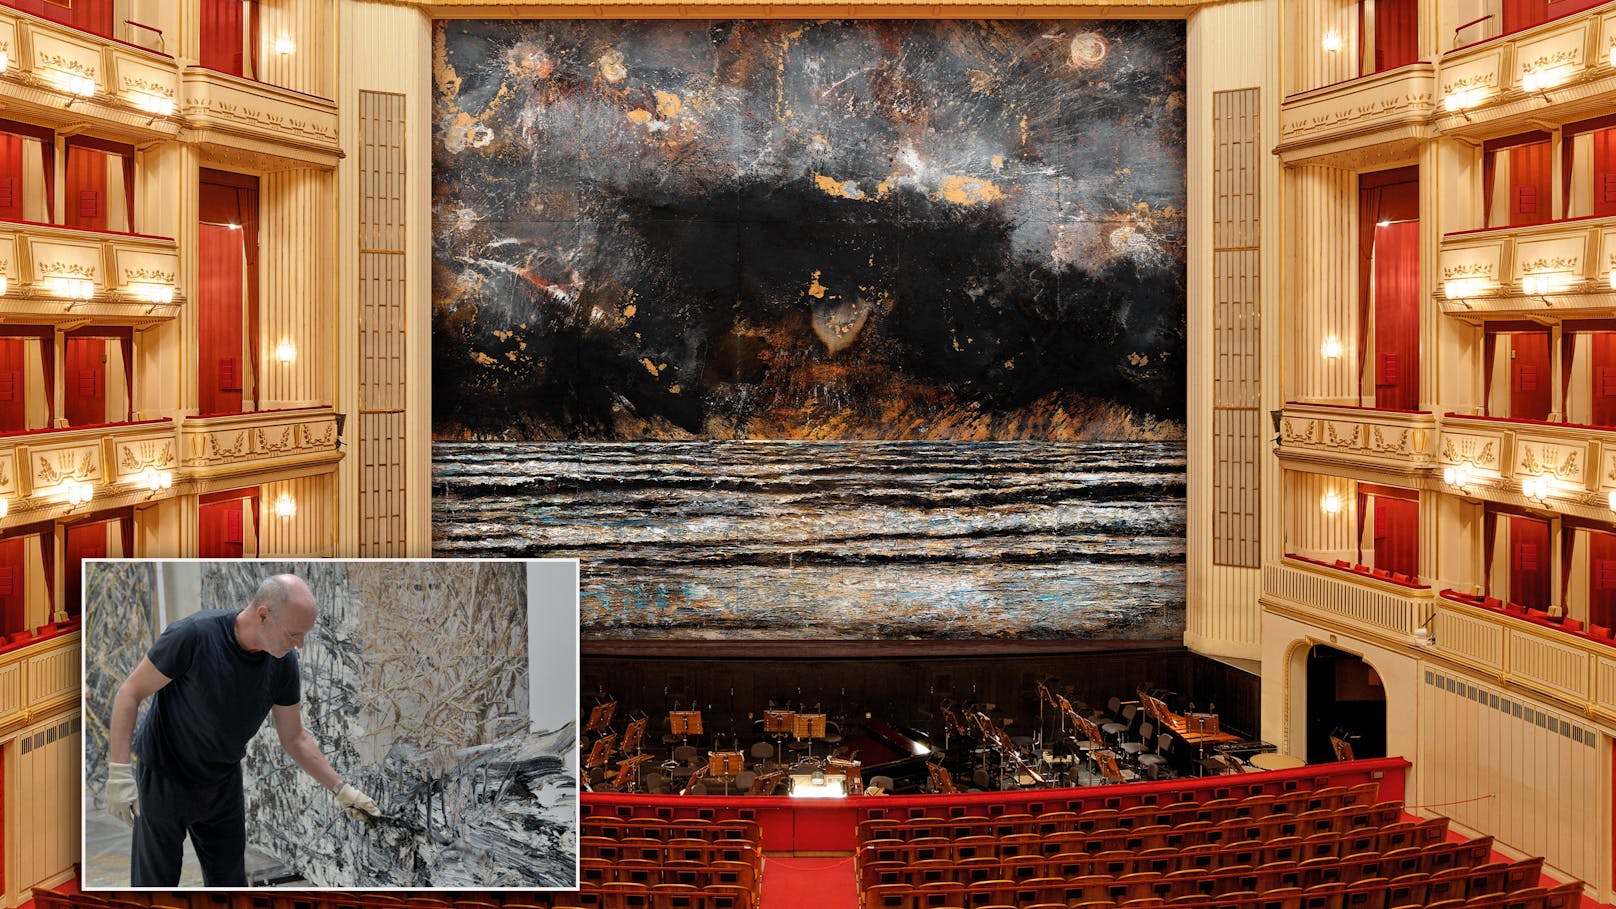 Vorhang auf für 16.000 Kilo schweres Kunstwerk in Oper